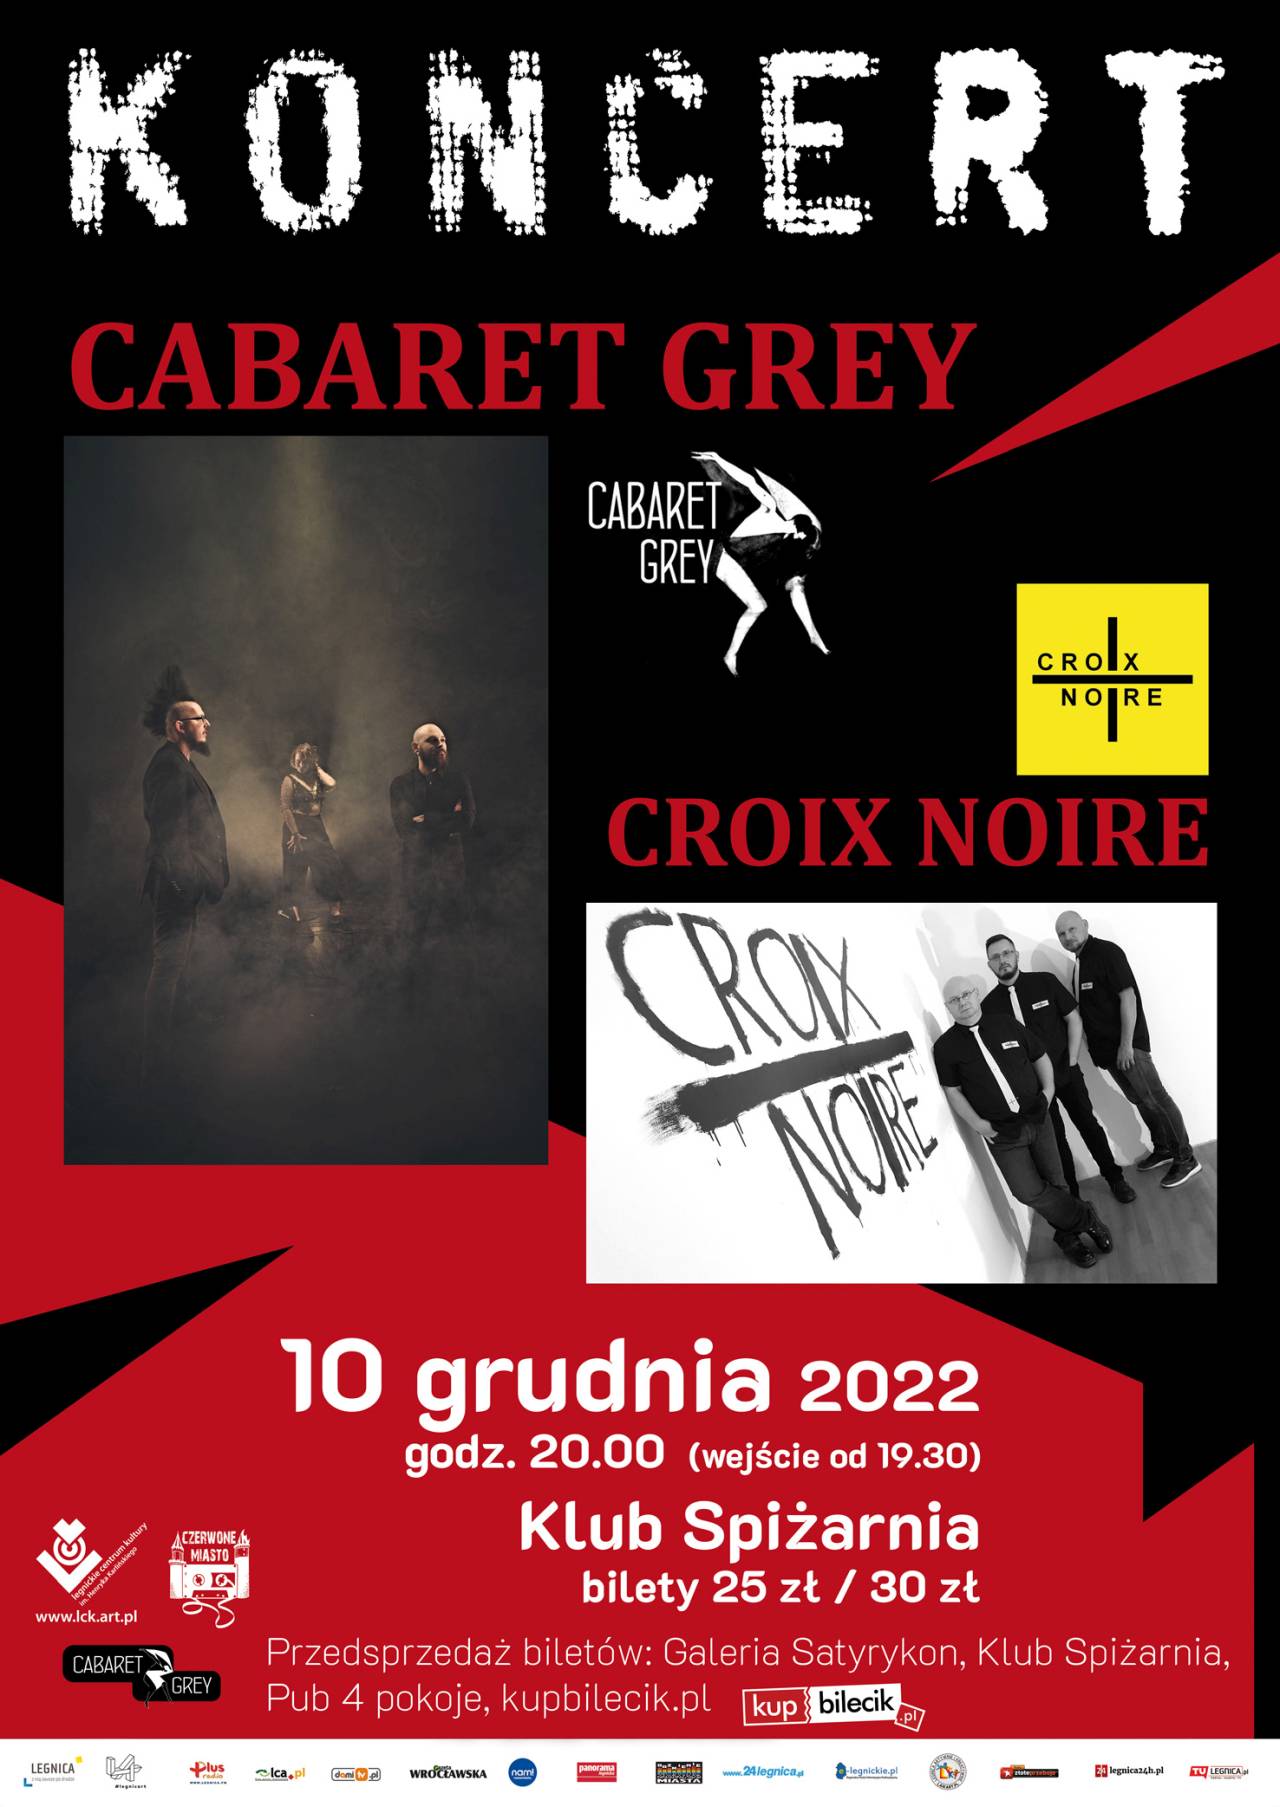 Koncert Cabaret Grey i Croix Noire